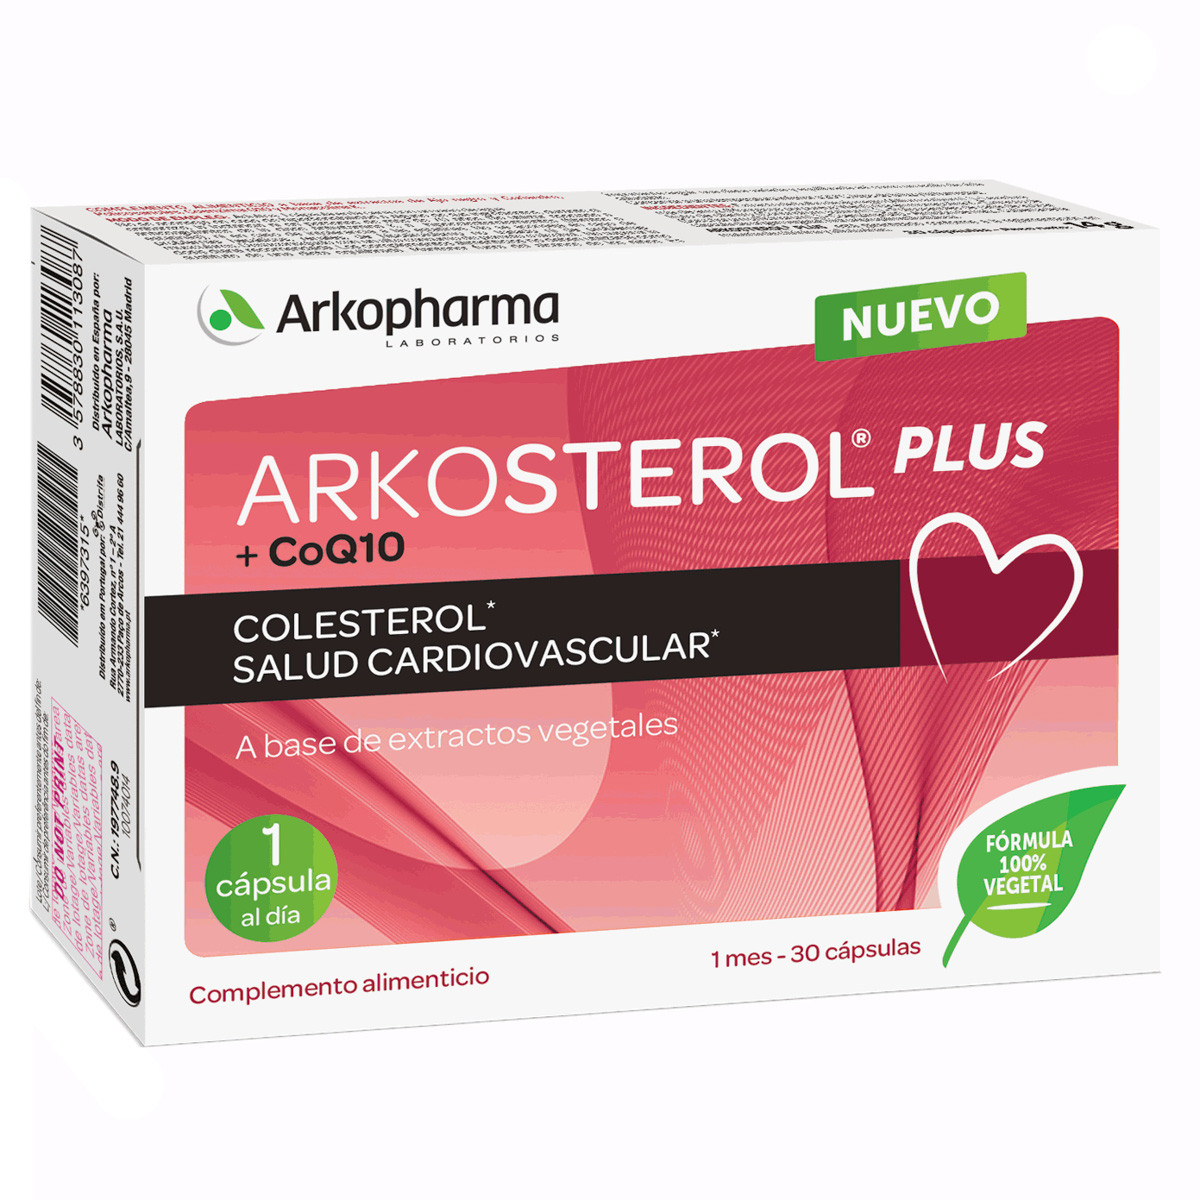 Arkopharma Arkosterol Plus CoQ10 salud cardiovascular 30 cápsulas